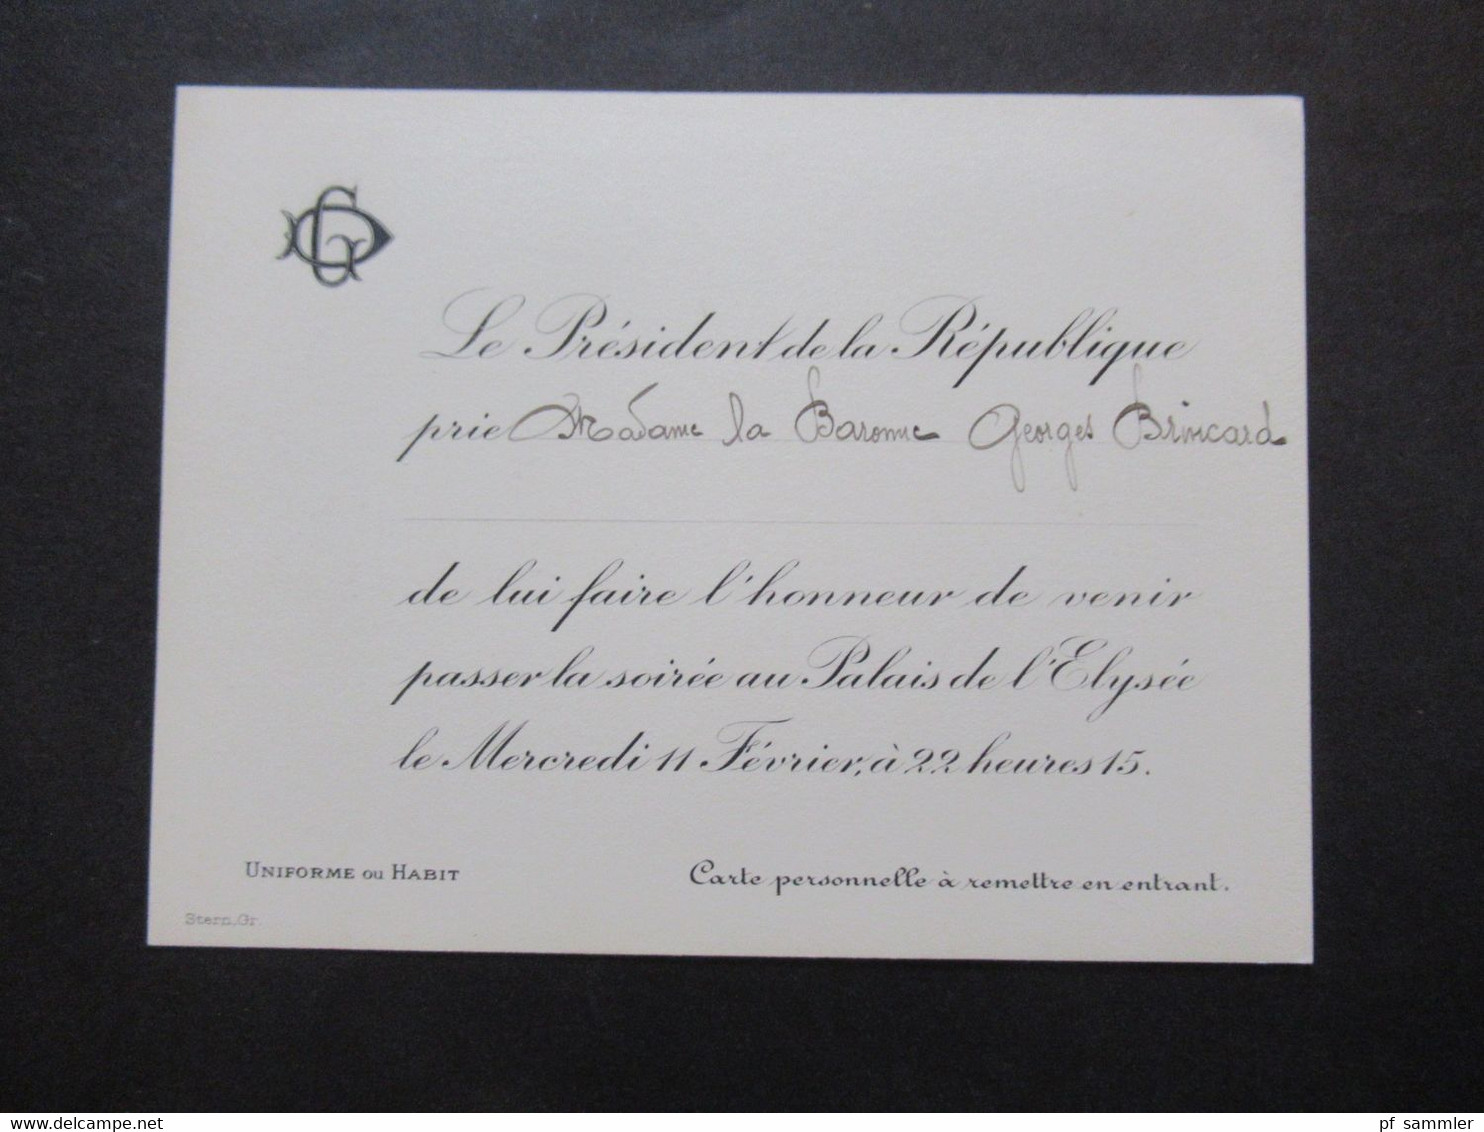 Frankreich 1920er Jahre 2x Originale Einladungskarte Von Gaston Doumergue Le President De La Republique Zur Soirée - Tickets - Entradas